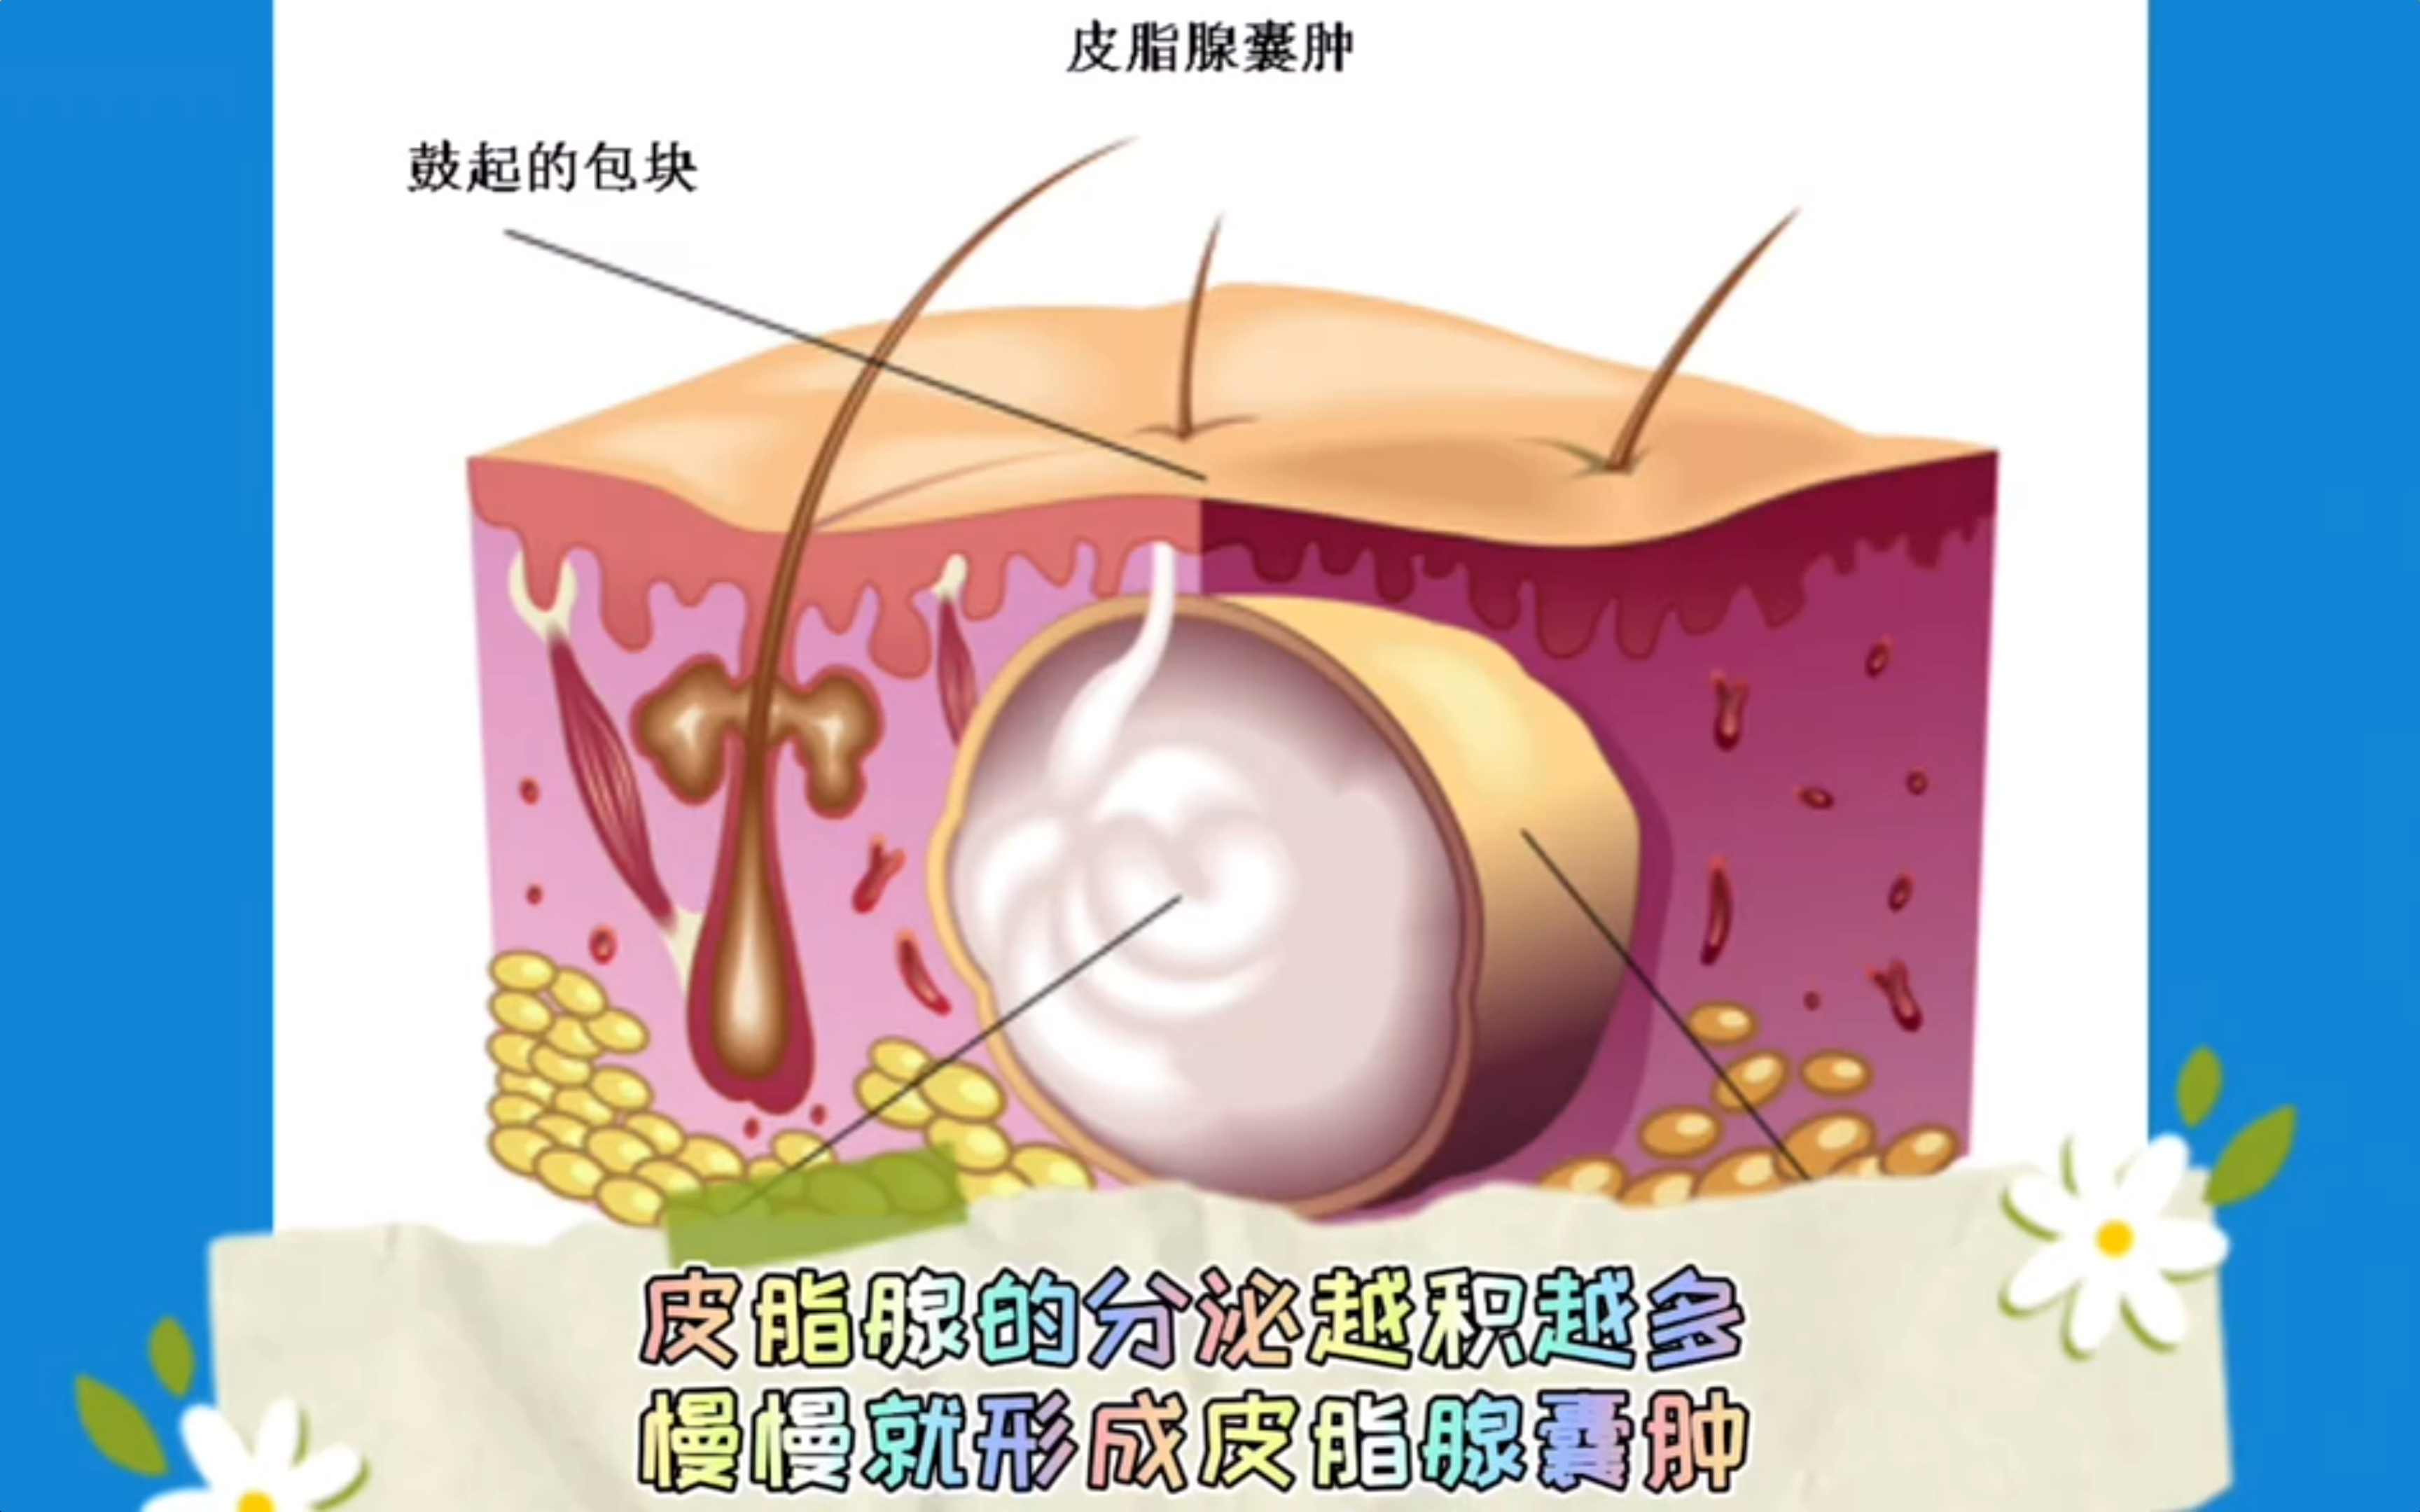 皮脂腺导管开口于毛囊